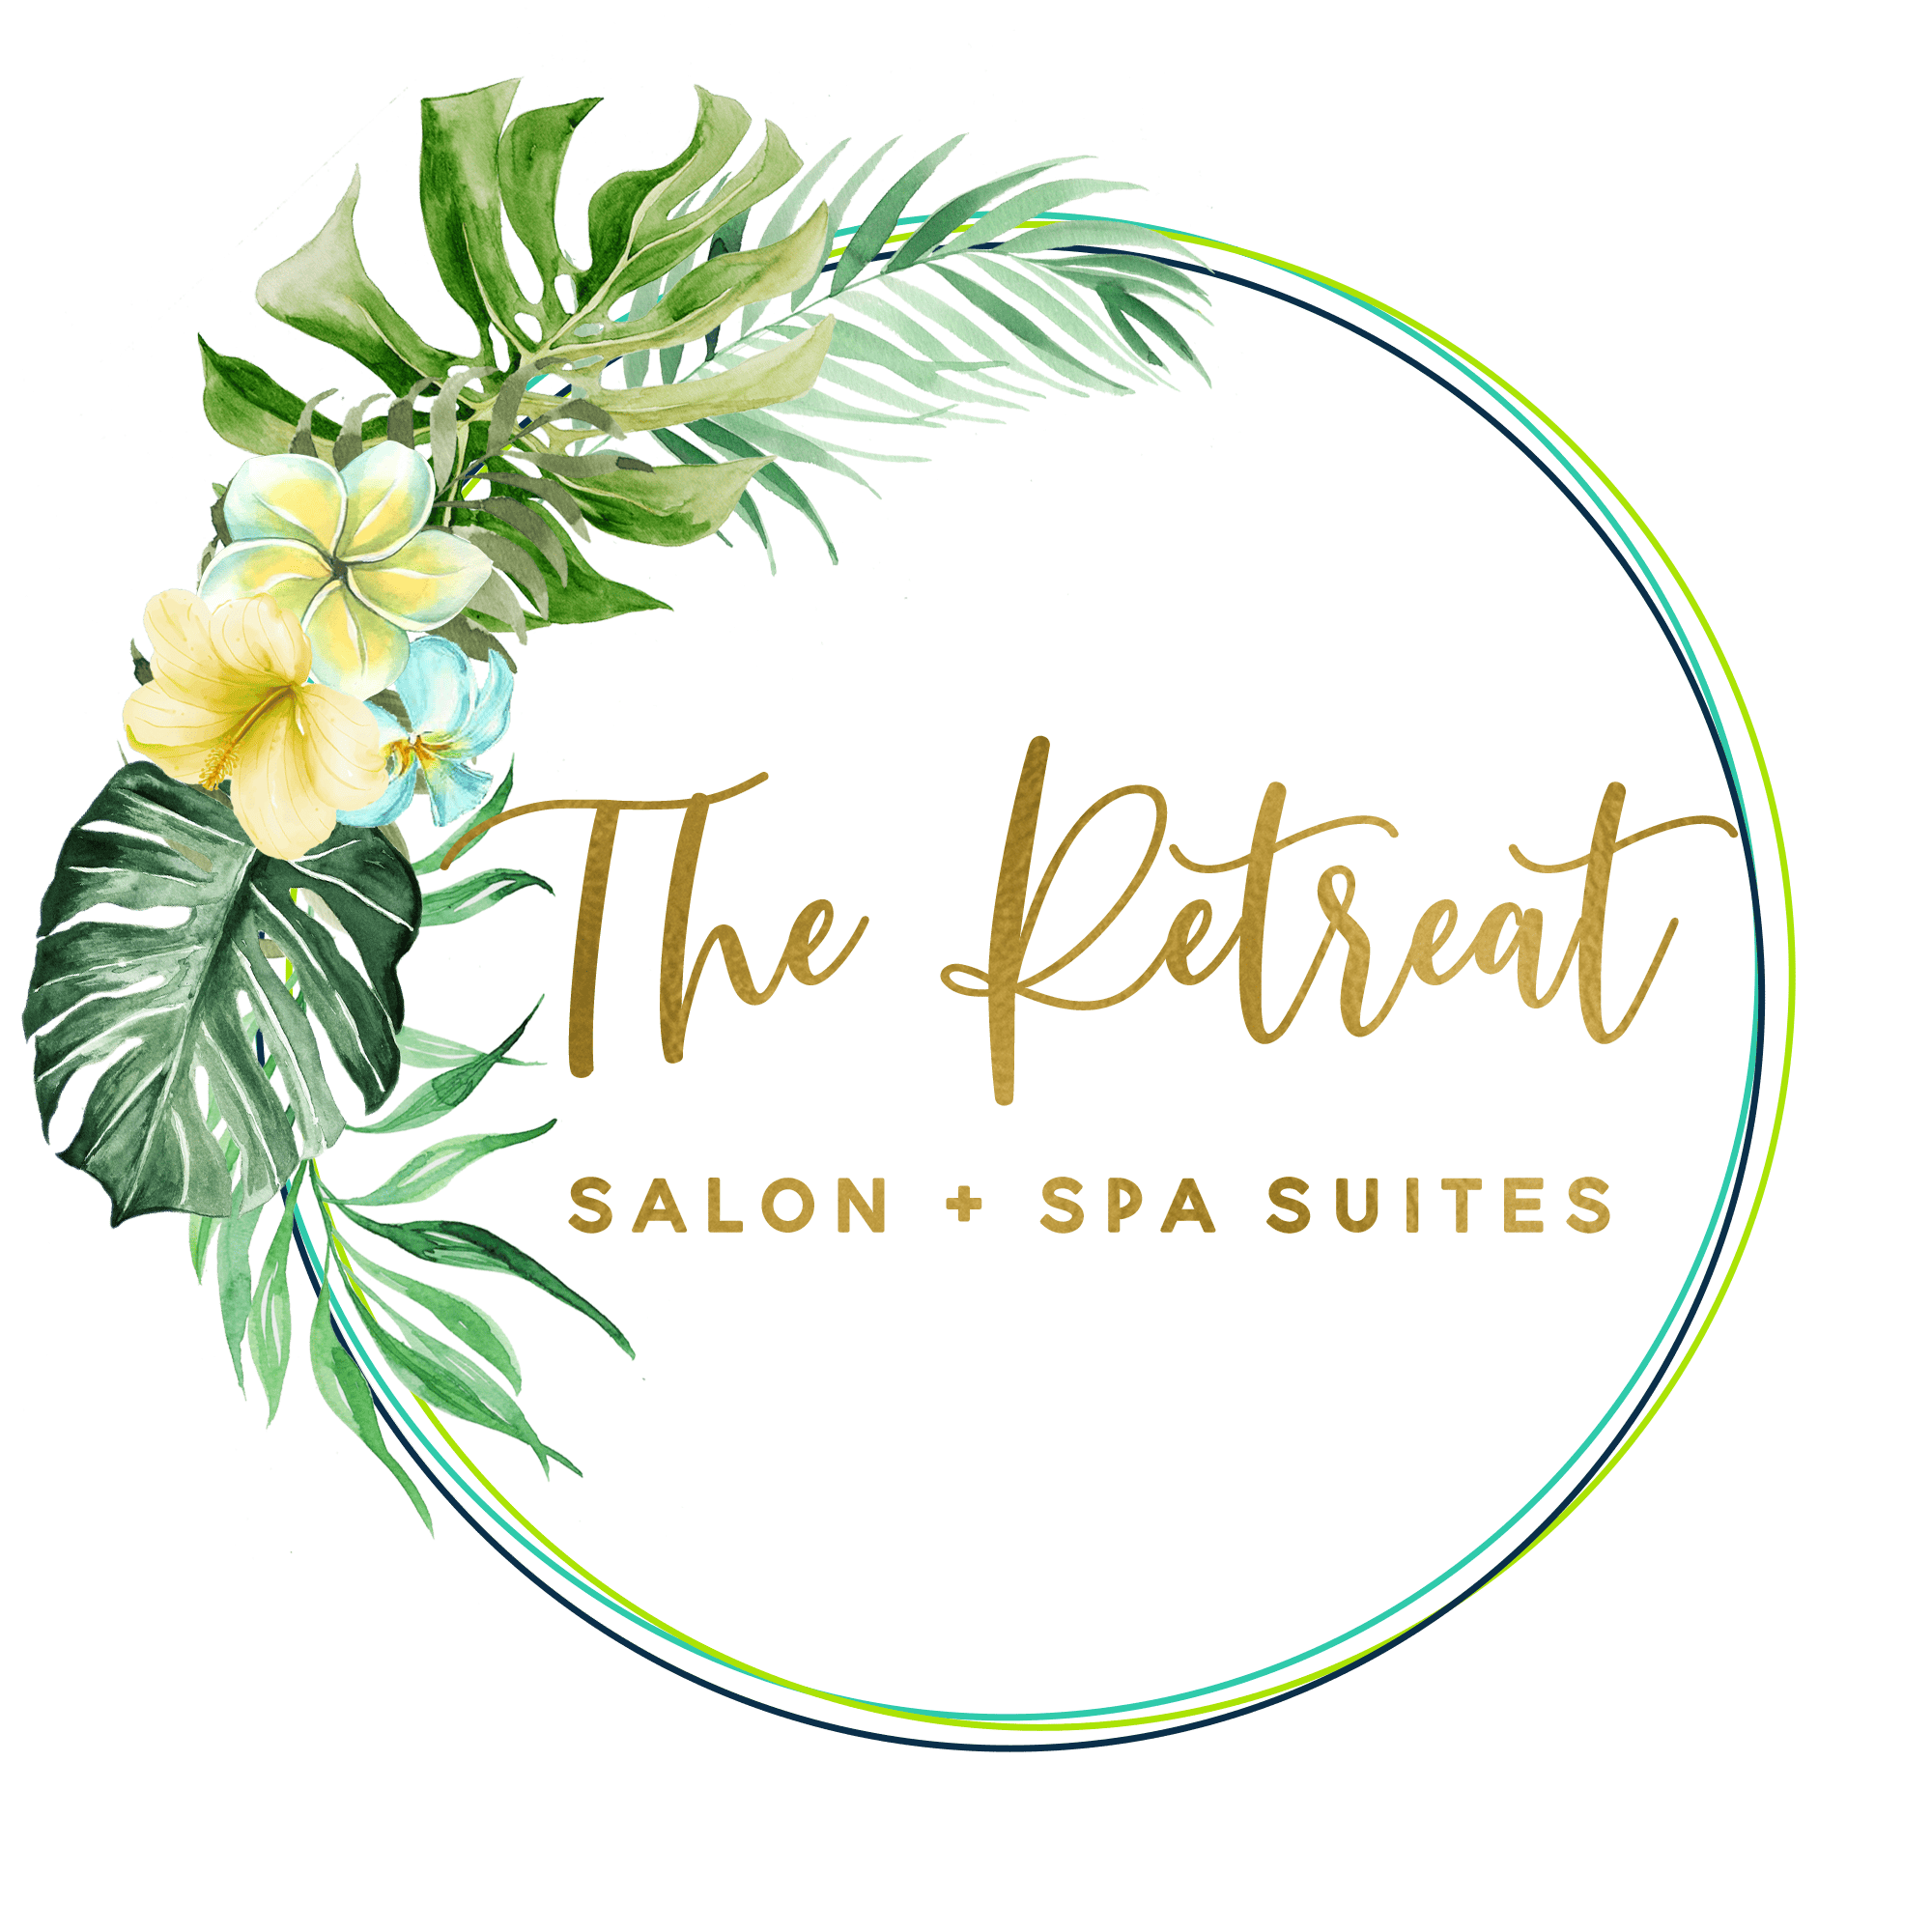 Services - The Retreat Salon + Spa Suites - Jacksonville, FL